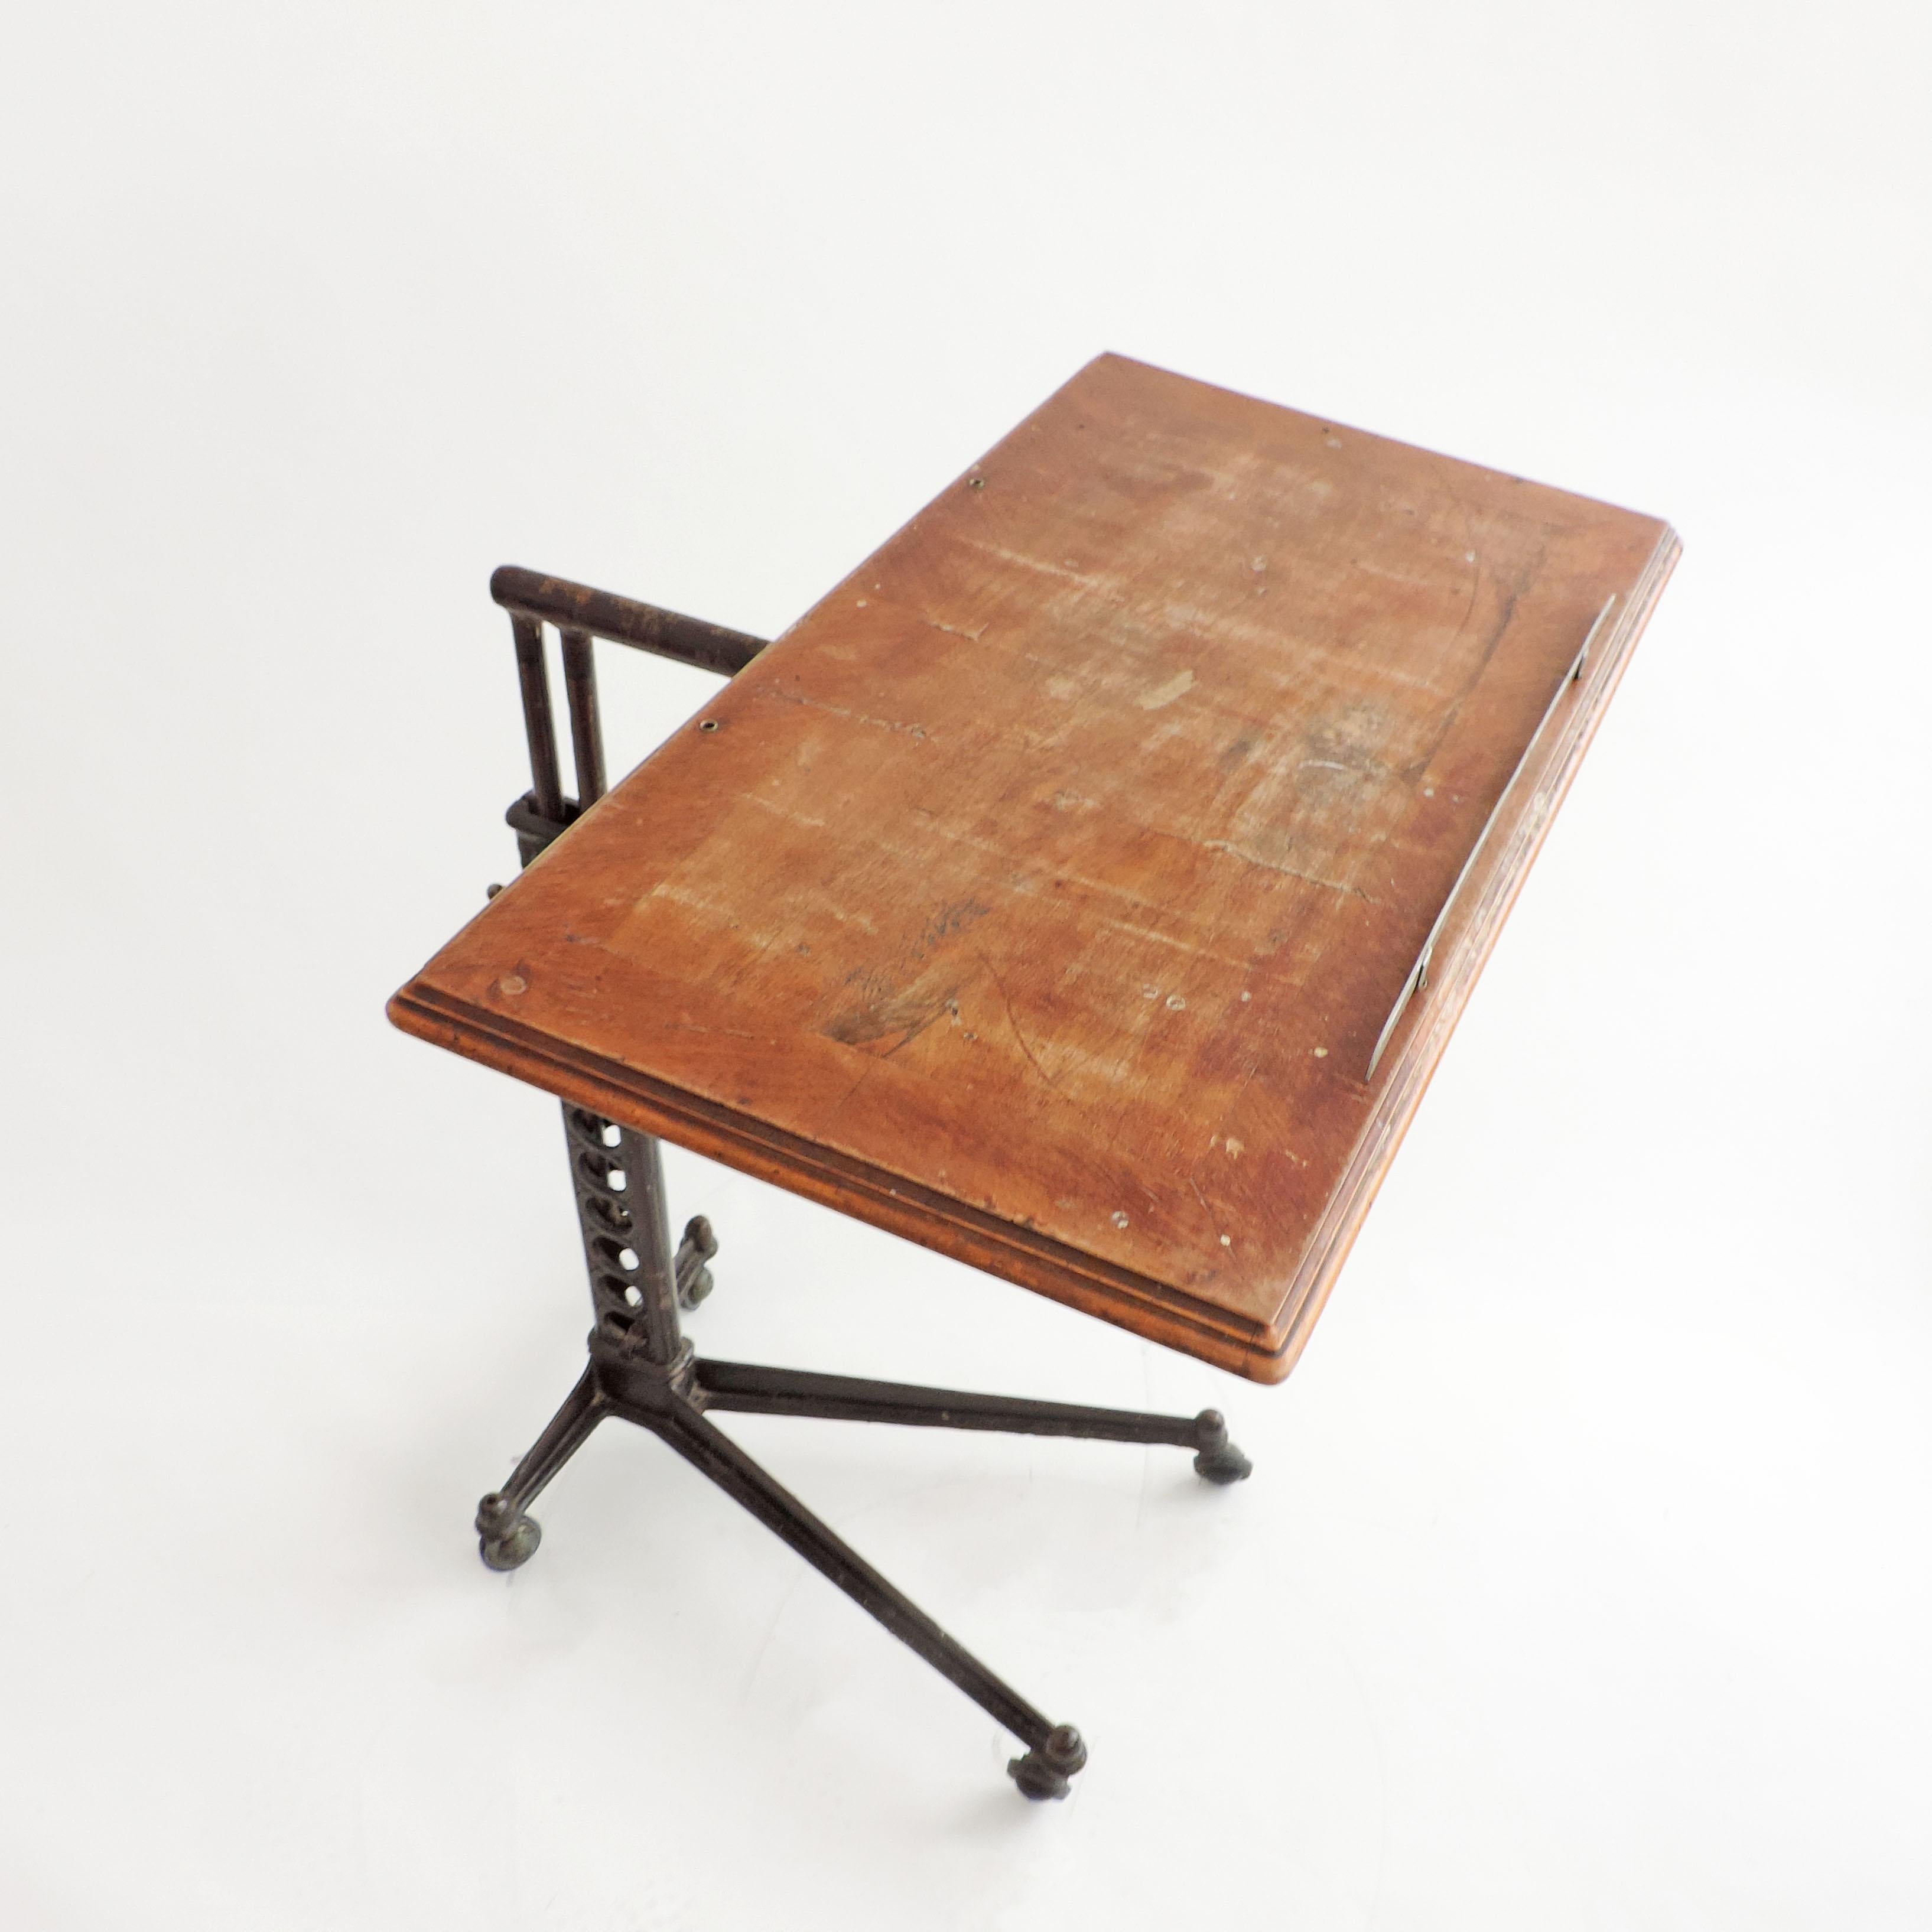 verstellbarer Gerätetisch aus Metall und Holz um 1900.
Wunderschön gefertigt.
Die Tischplatte ist vollständig seitlich / nach oben und unten drehbar.
 